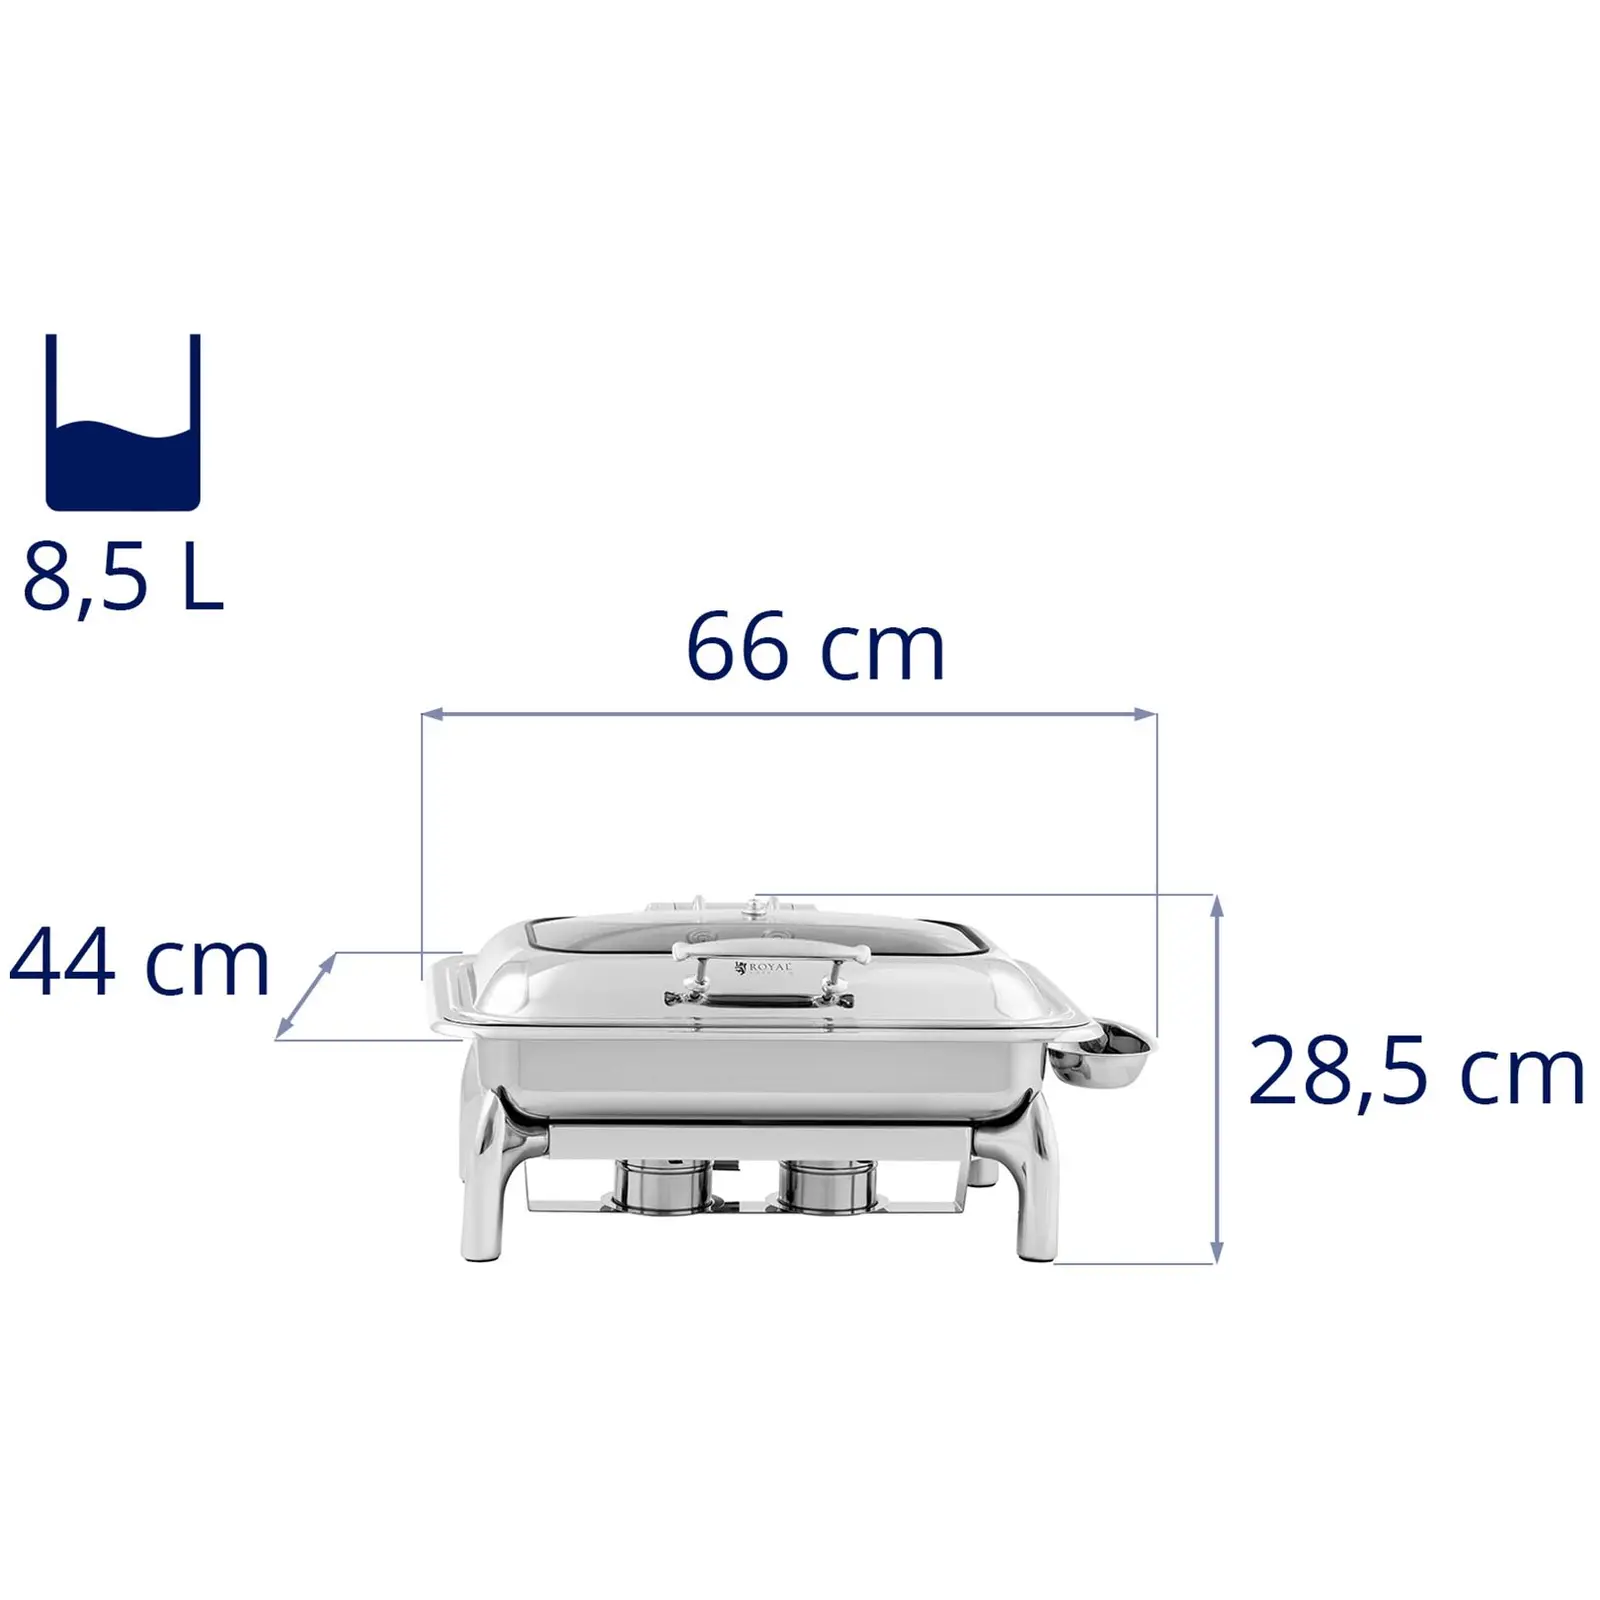 Chafing dish - GN 1/1 - Royal Catering - 8,5 l - 2 x palivový článok